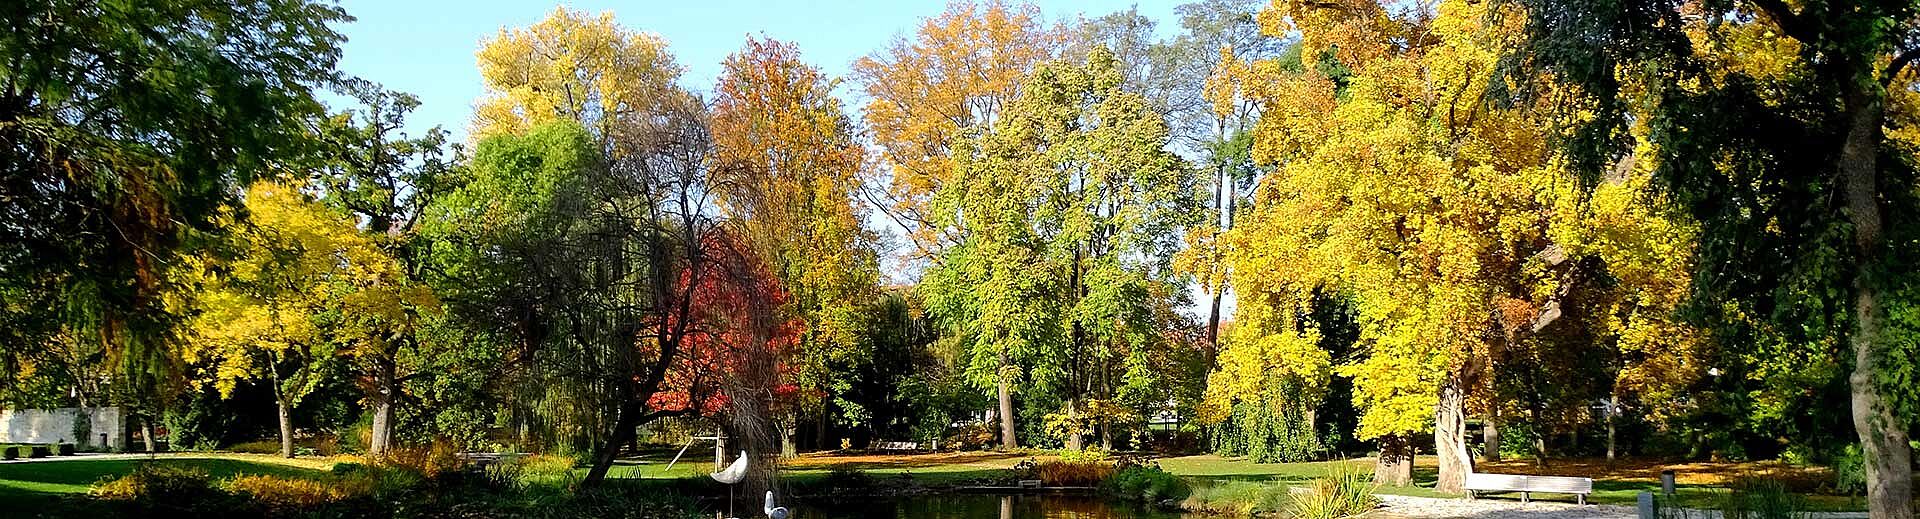 Der Teich im Öhringer Hofgarten mit herbstlichen Bäumen ist zu sehen.